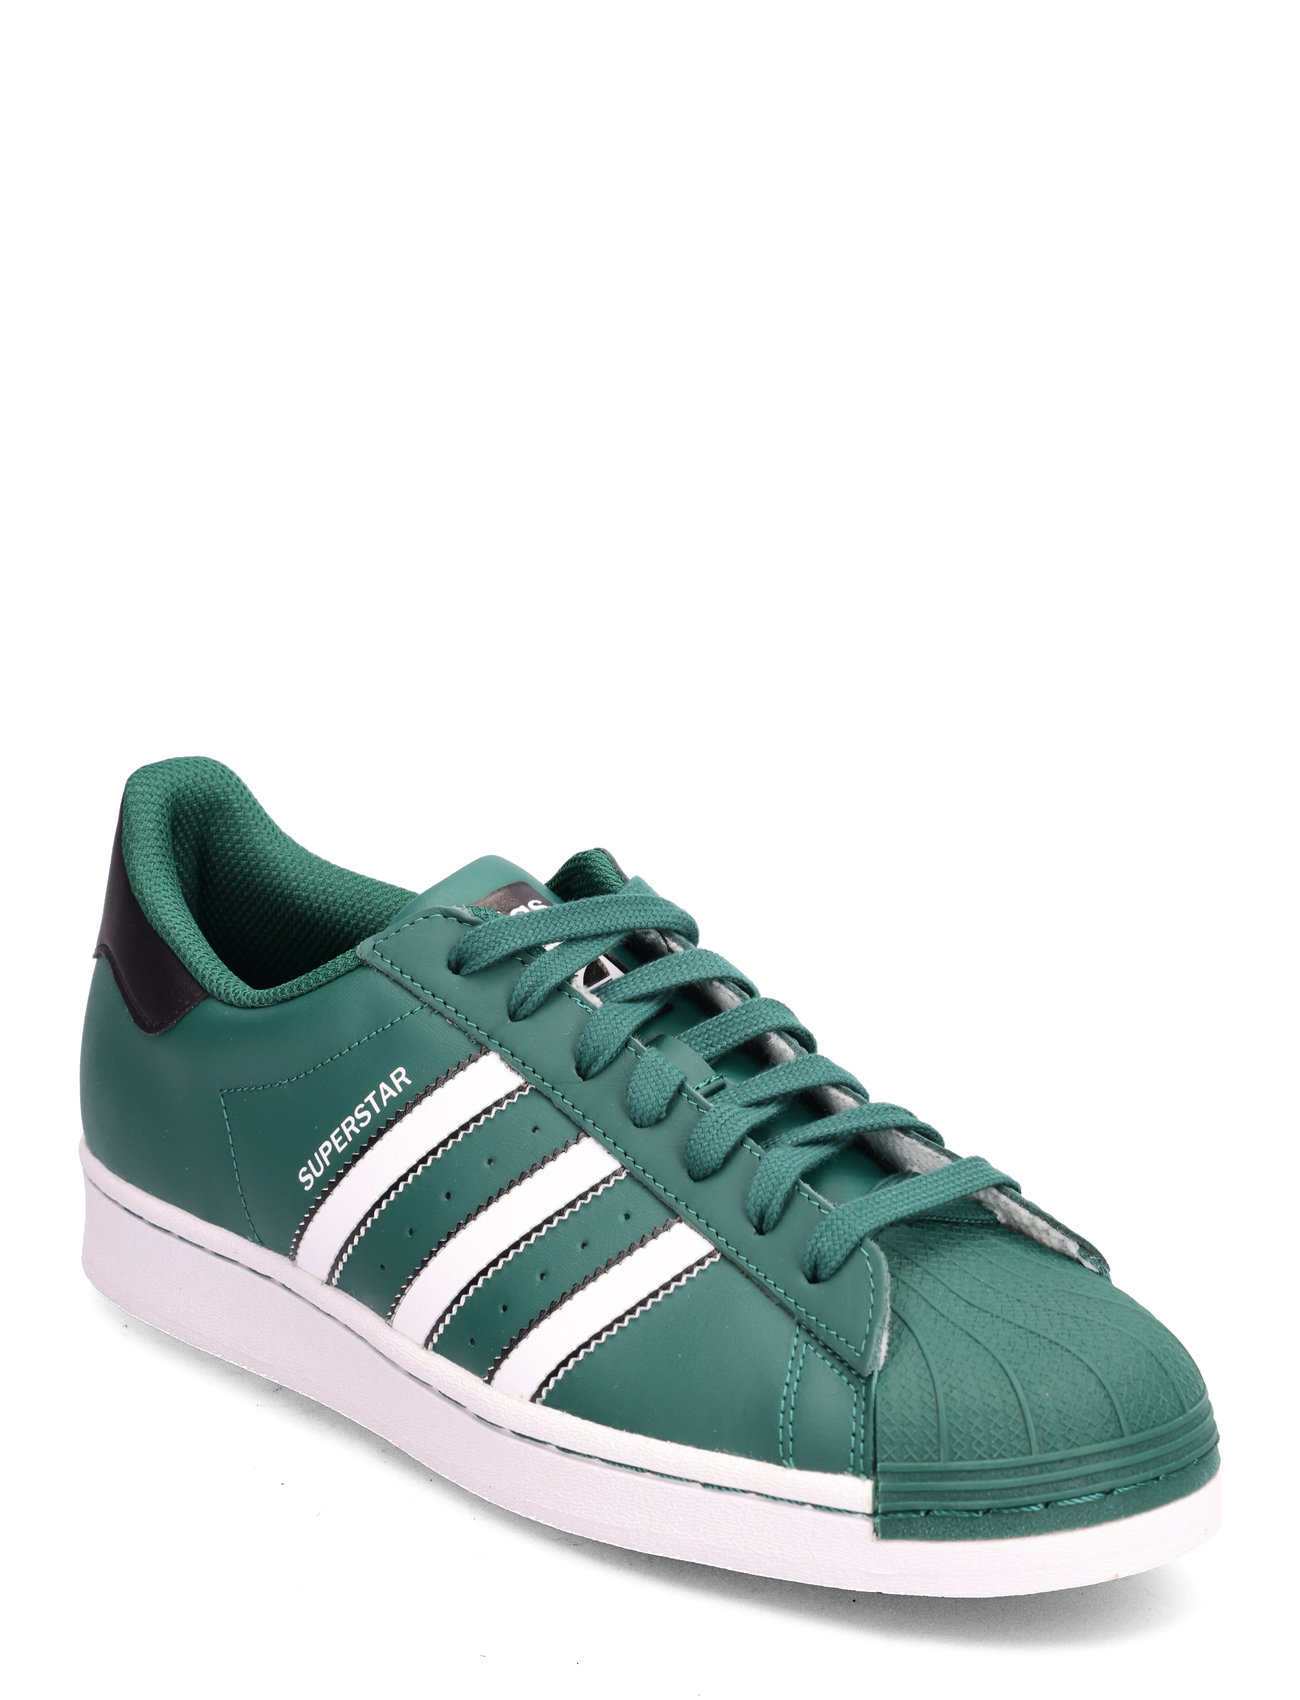 Superstar Sport Sneakers Low-top Sneakers Green Adidas Originals